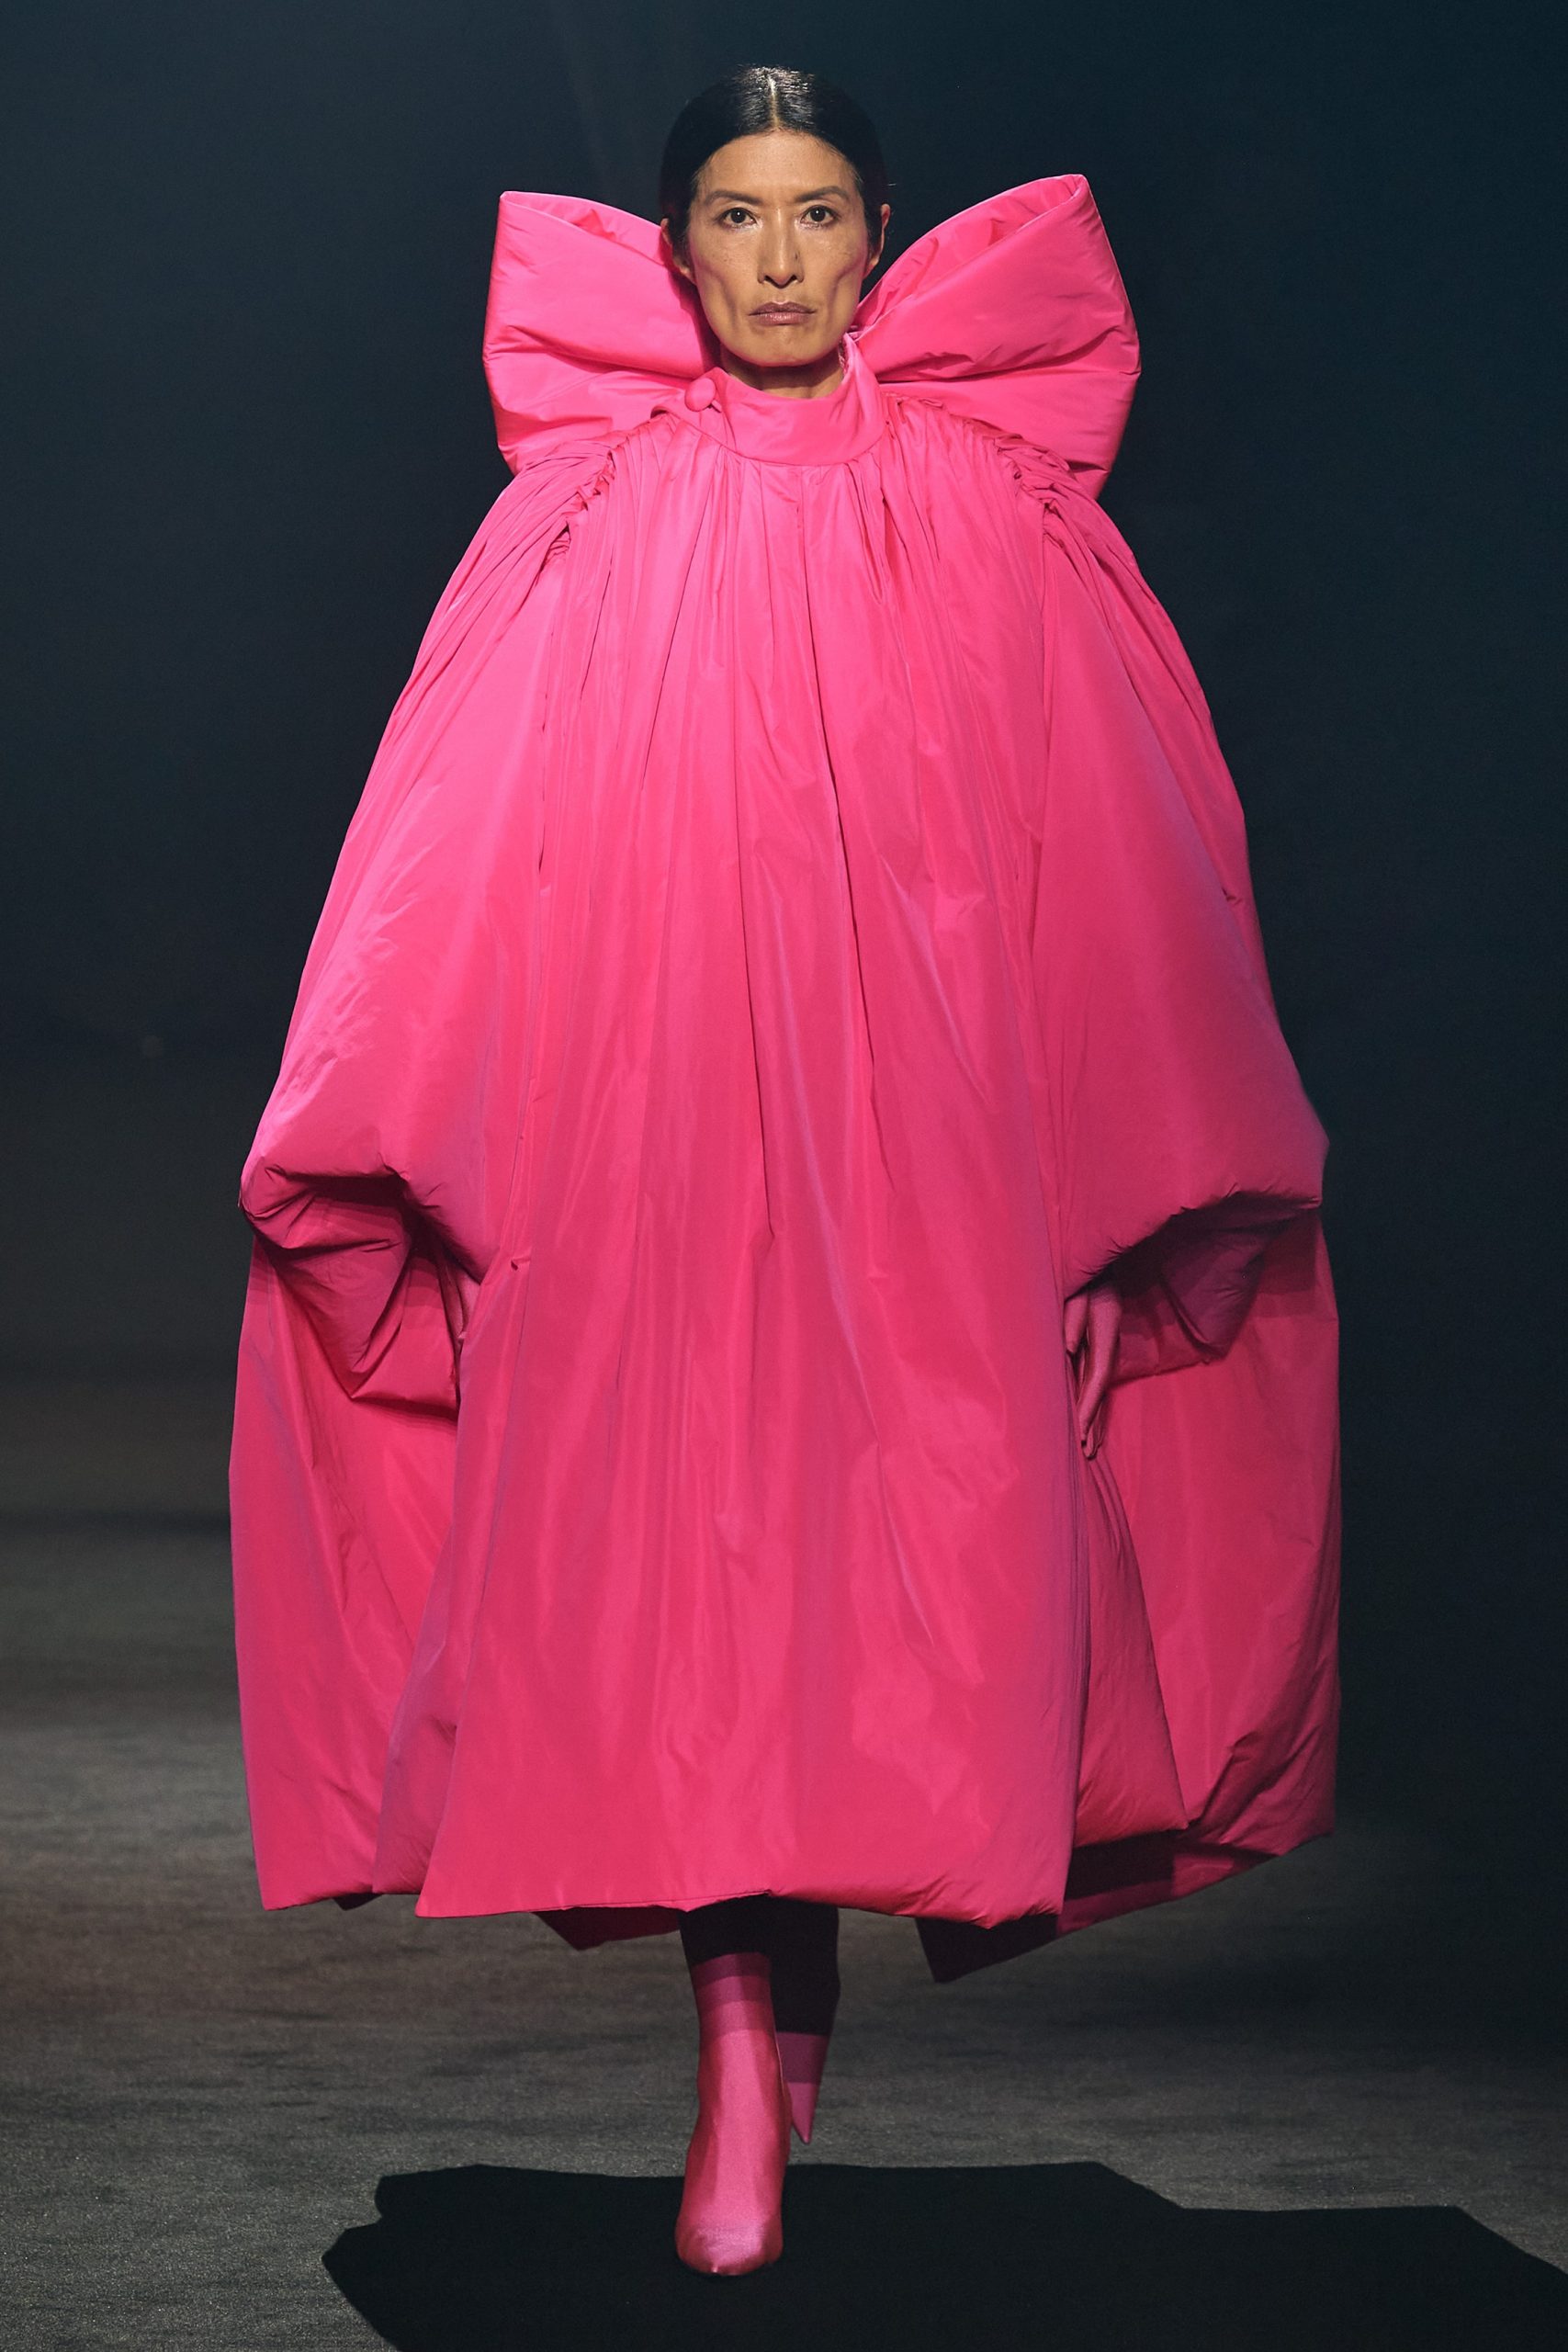 Balenciaga mang đến thiết kế áo choàng với chiếc nơ hồng khổng lồ ở mặt lưng. Giám đốc sáng tạo Demma Gvasalia lẫn nhà mốt đều nổi tiếng với những thiết kế theo trường phái ấn tượng, chú trọng đến phom dáng độc đáo.